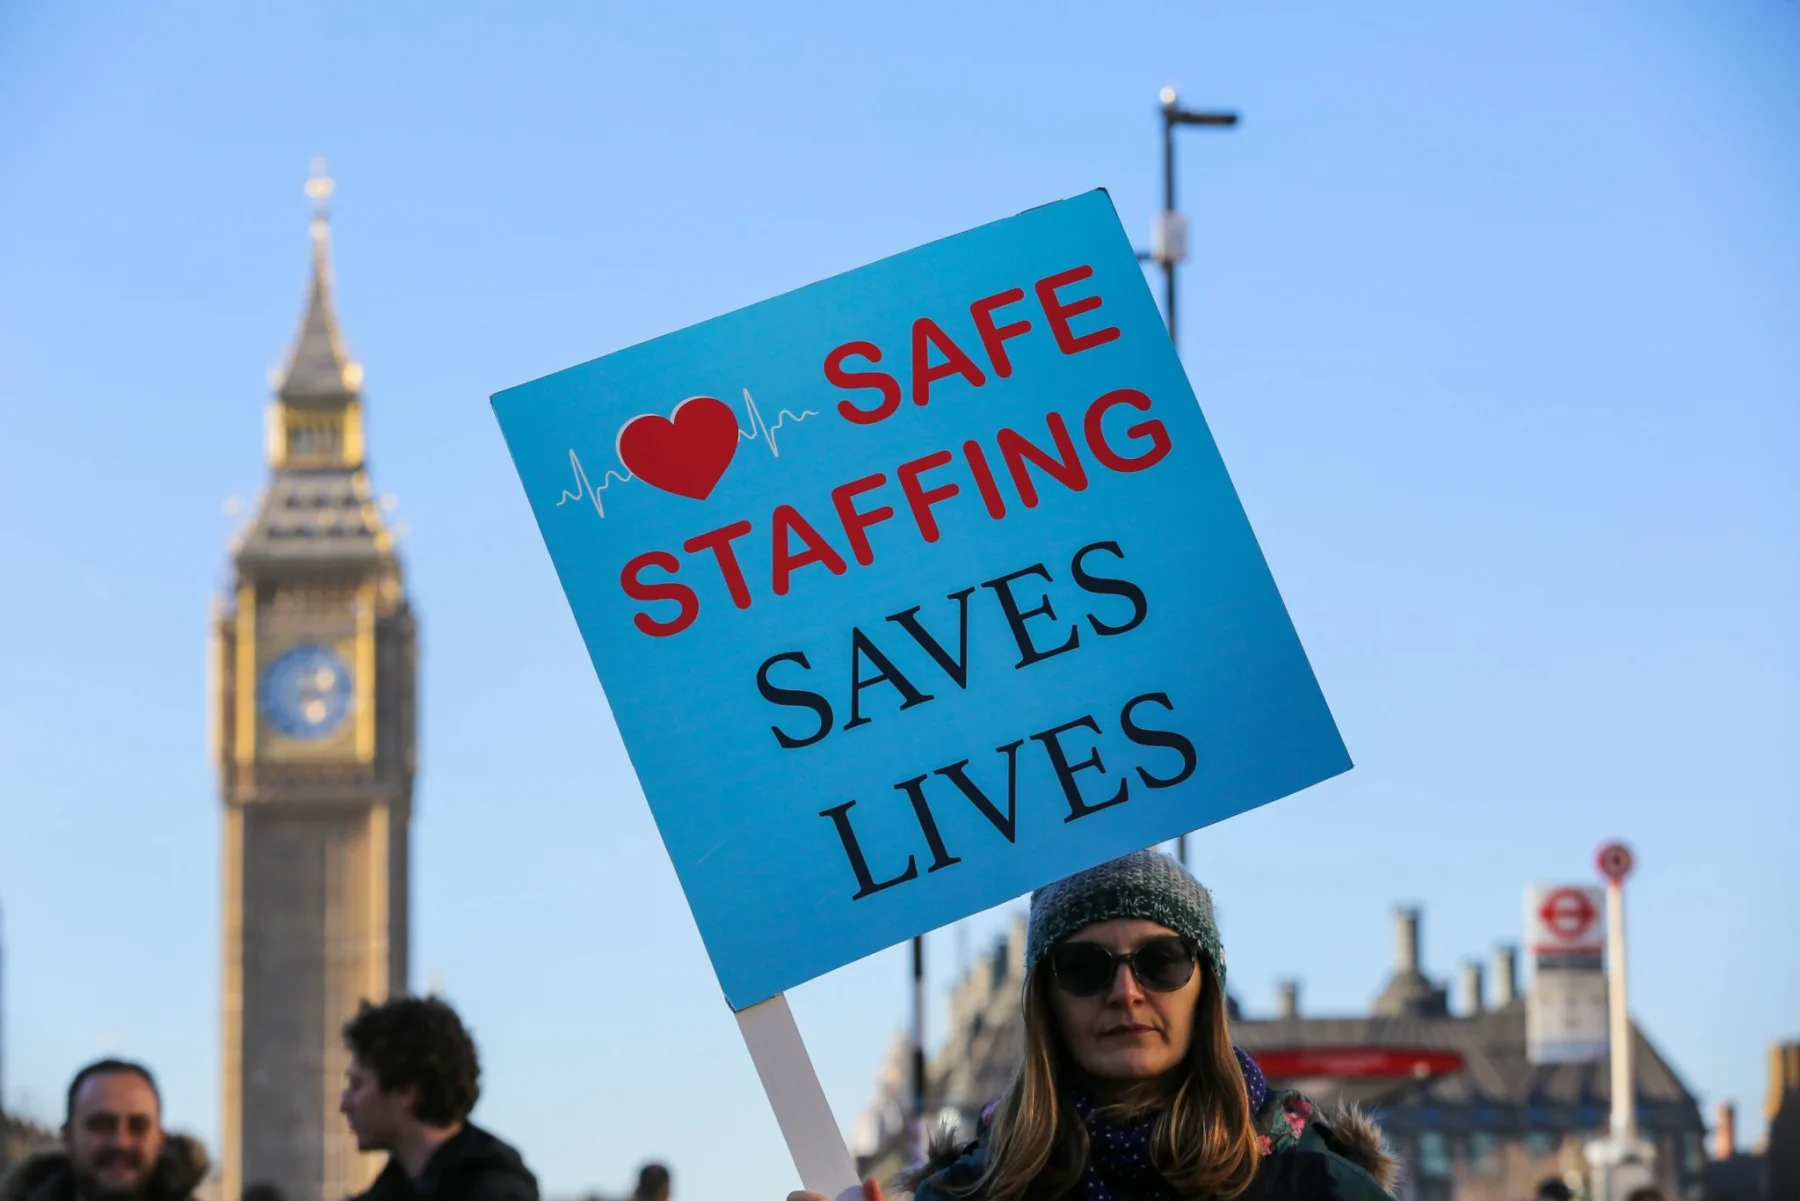 Νοσηλευτές NHS: Αναστέλλουν την 48ωρη απεργία ξεκινώντας ξανά συνομιλίες με την κυβέρνηση